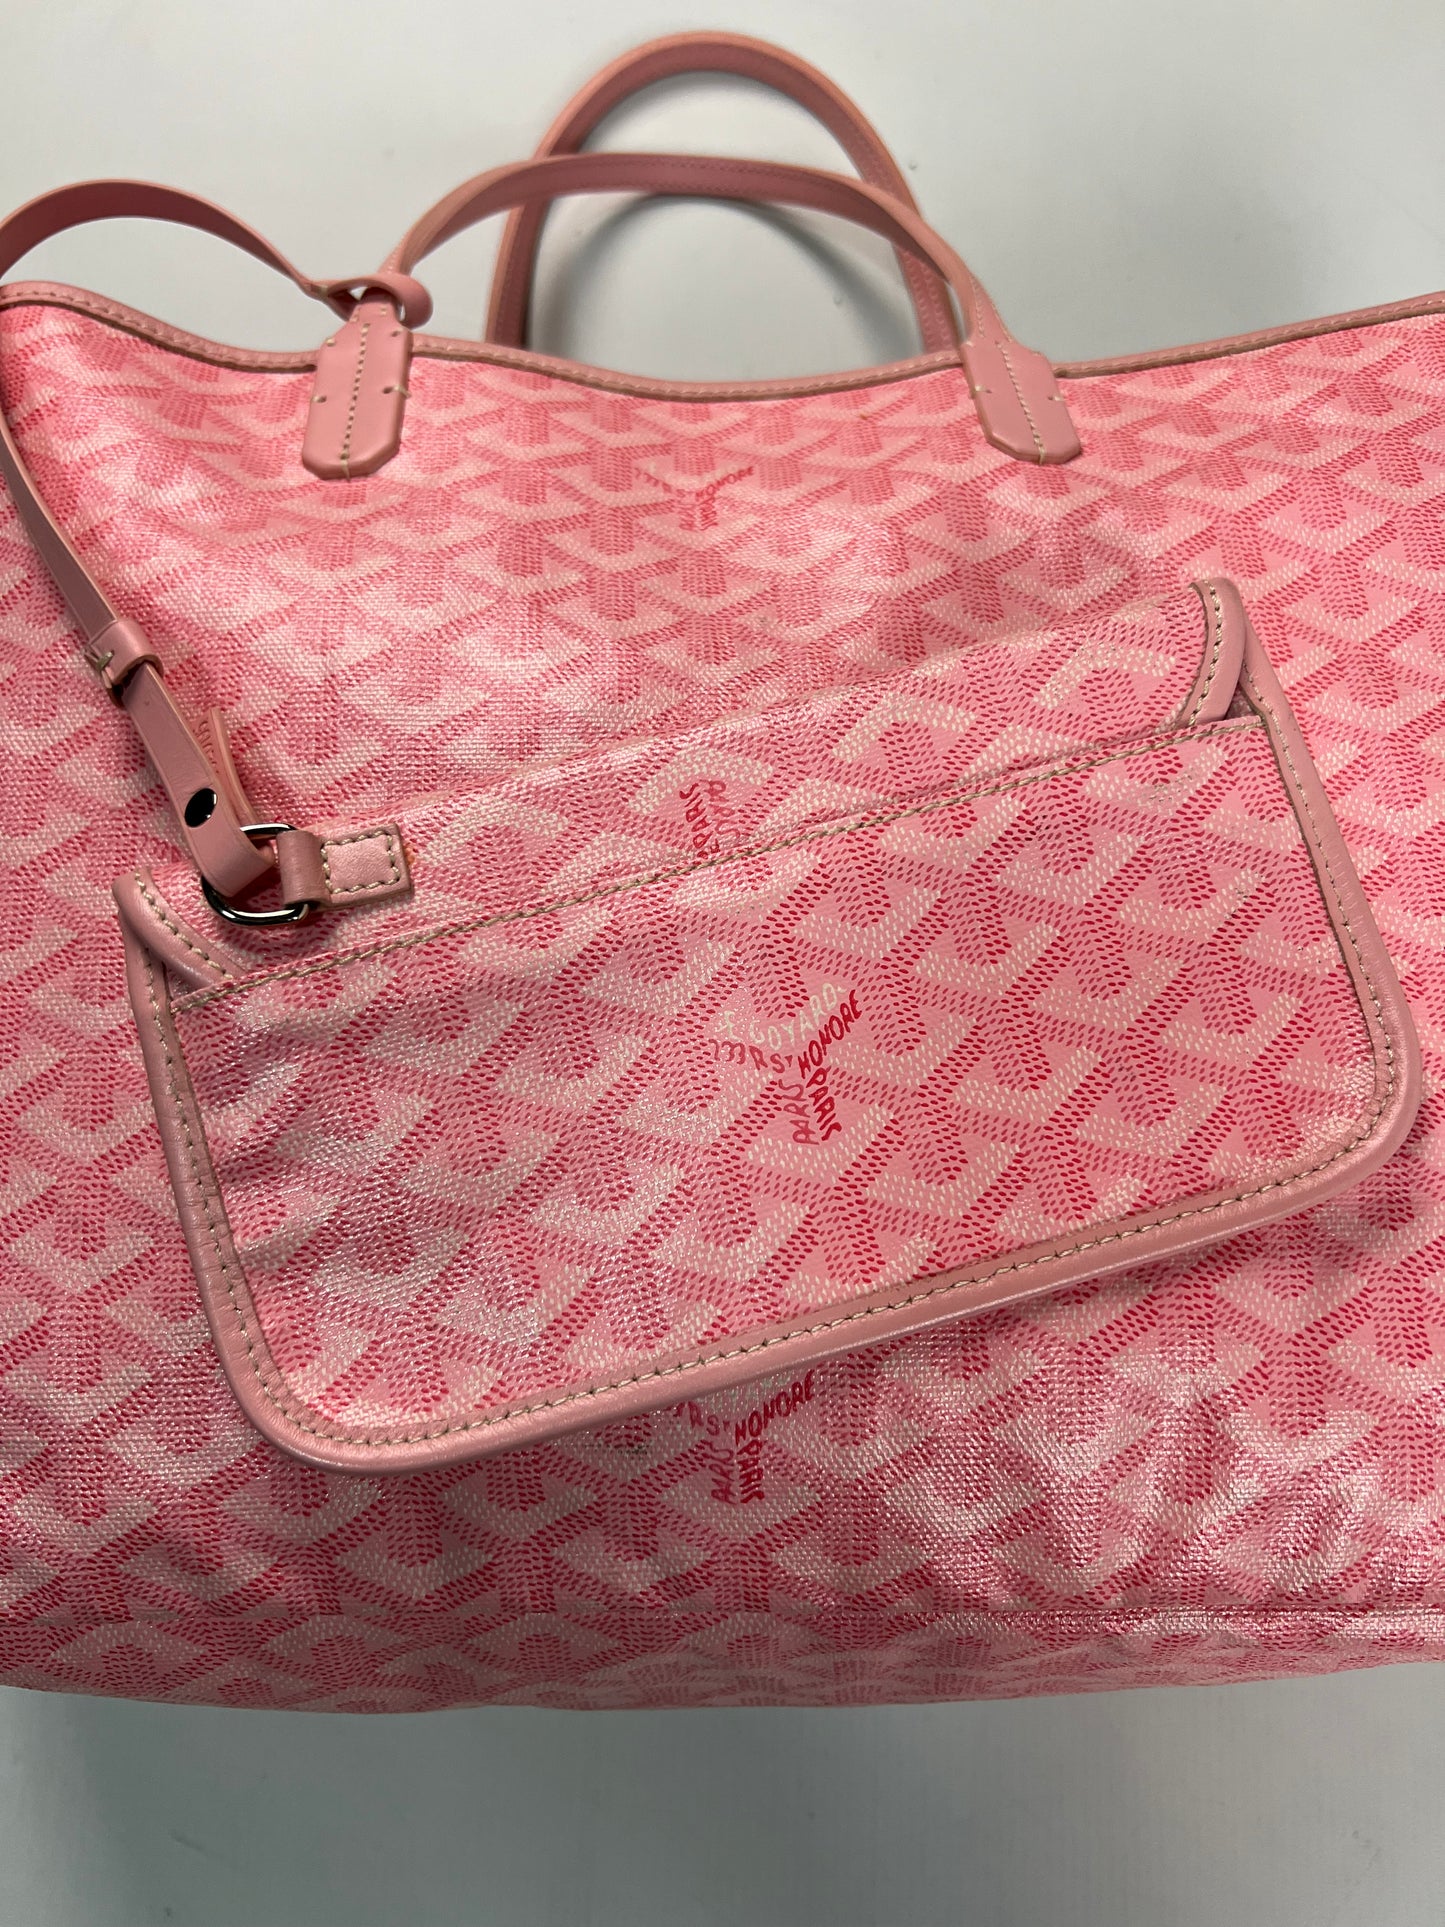 Goyard Saint Louis tote PM bag in pink SZ:OS